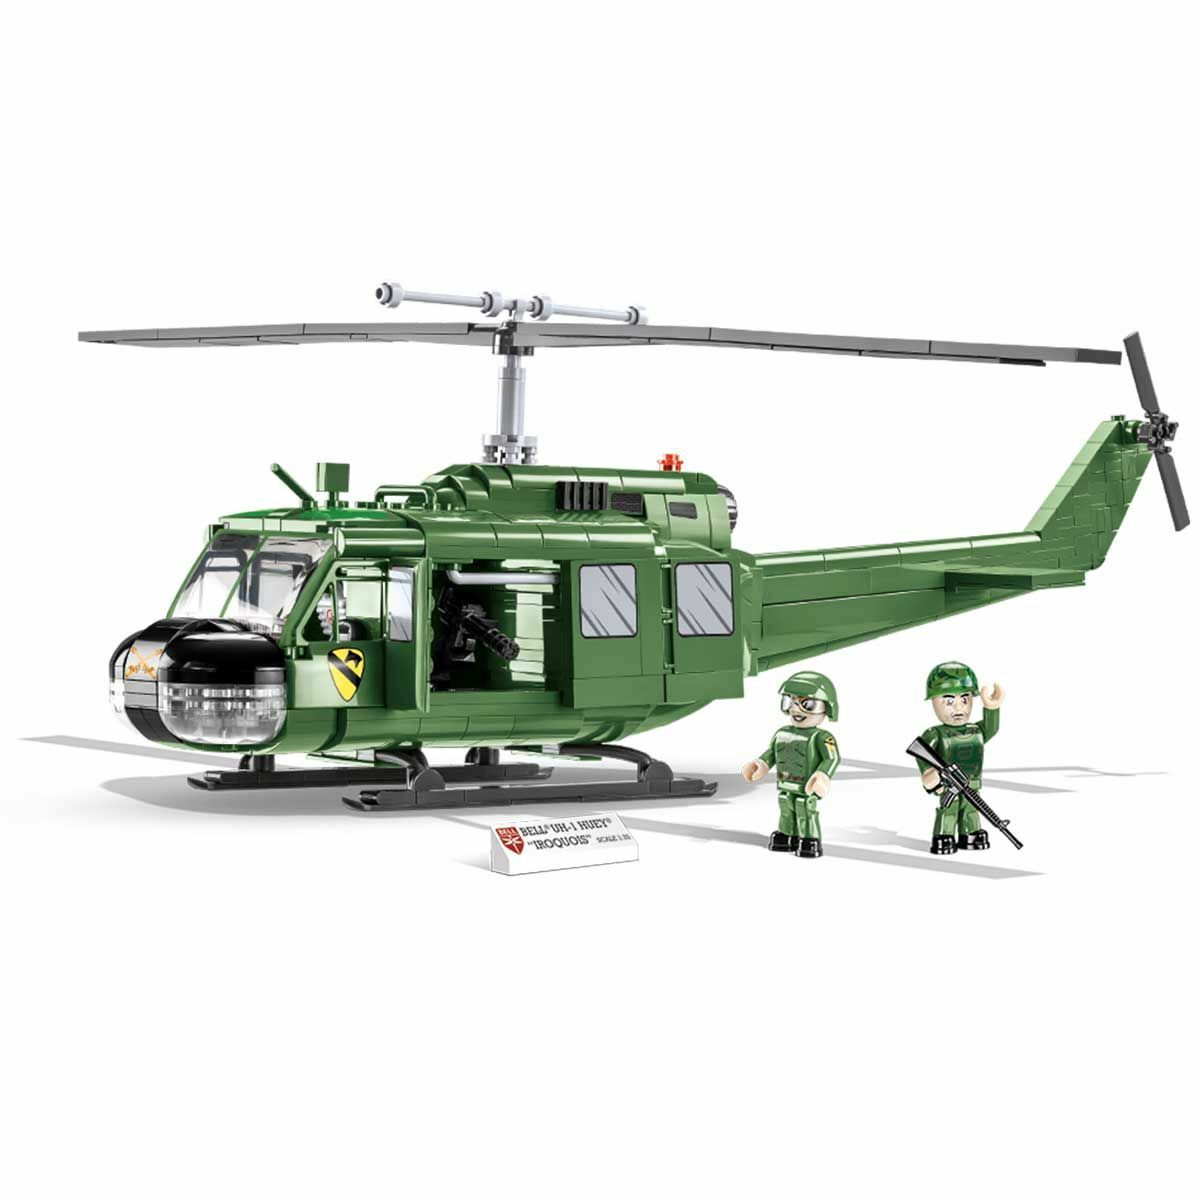 Cobi 2423 Bell UH-1 Huey "Iroquois" helikopteri 656 osaa